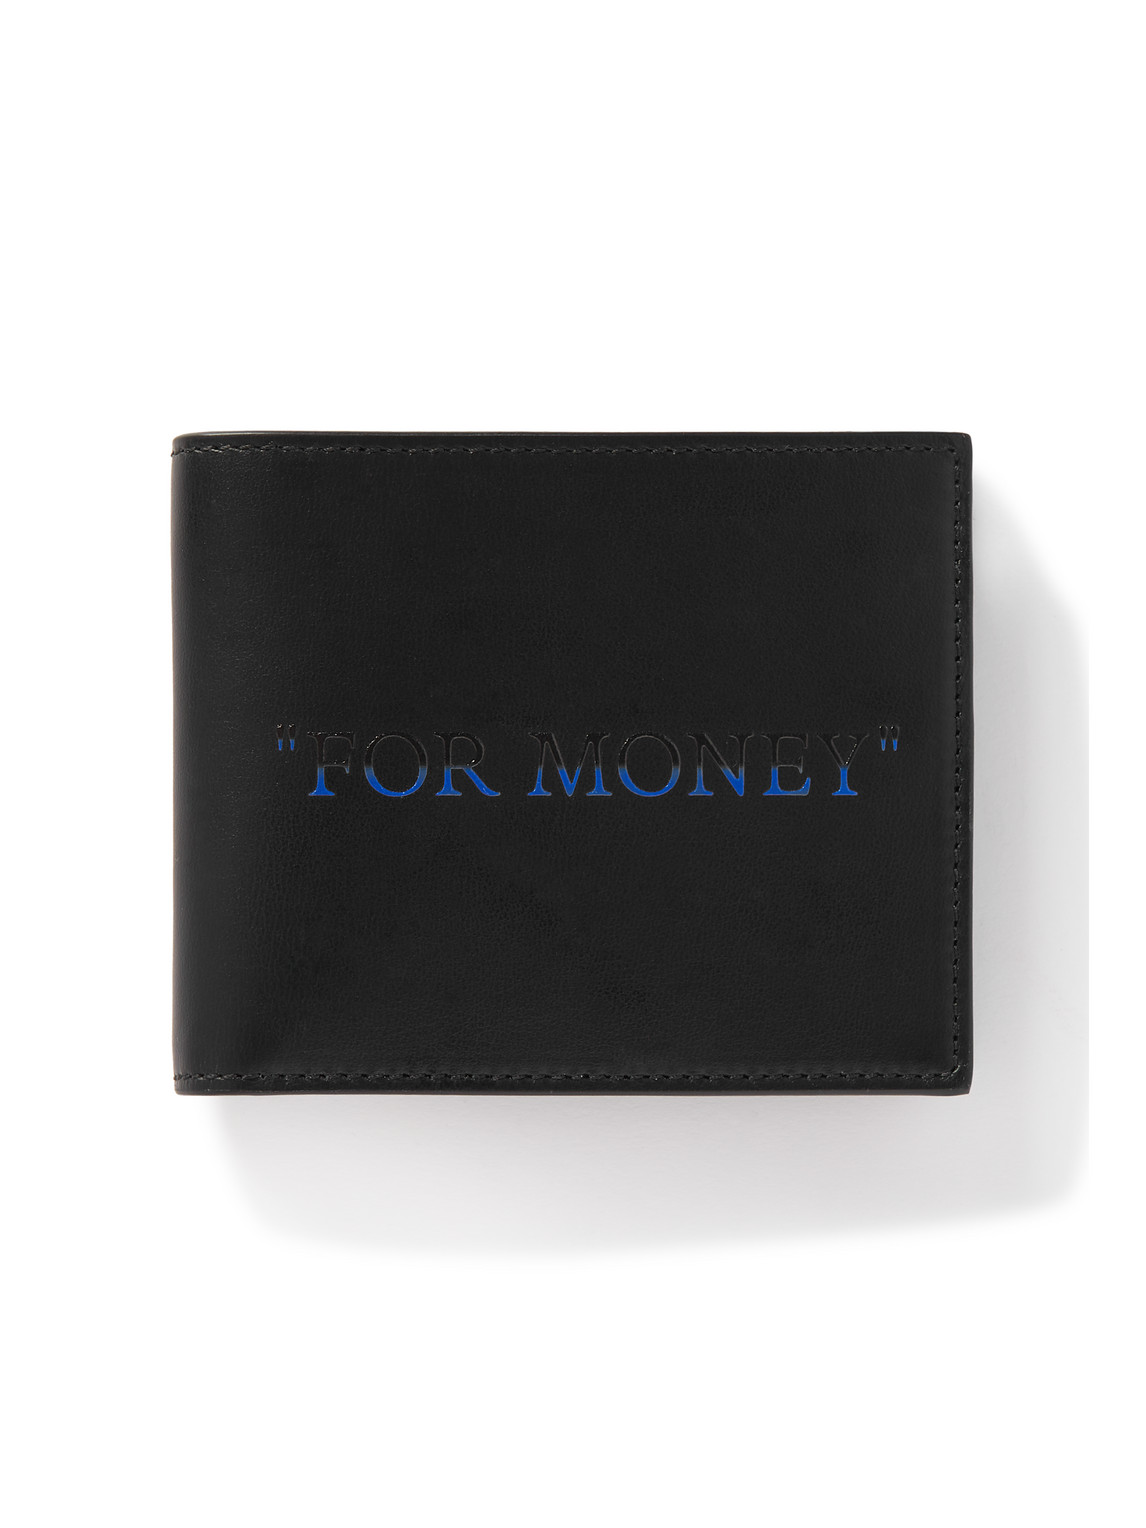 for money leather billfold wallet - Off-White - Men